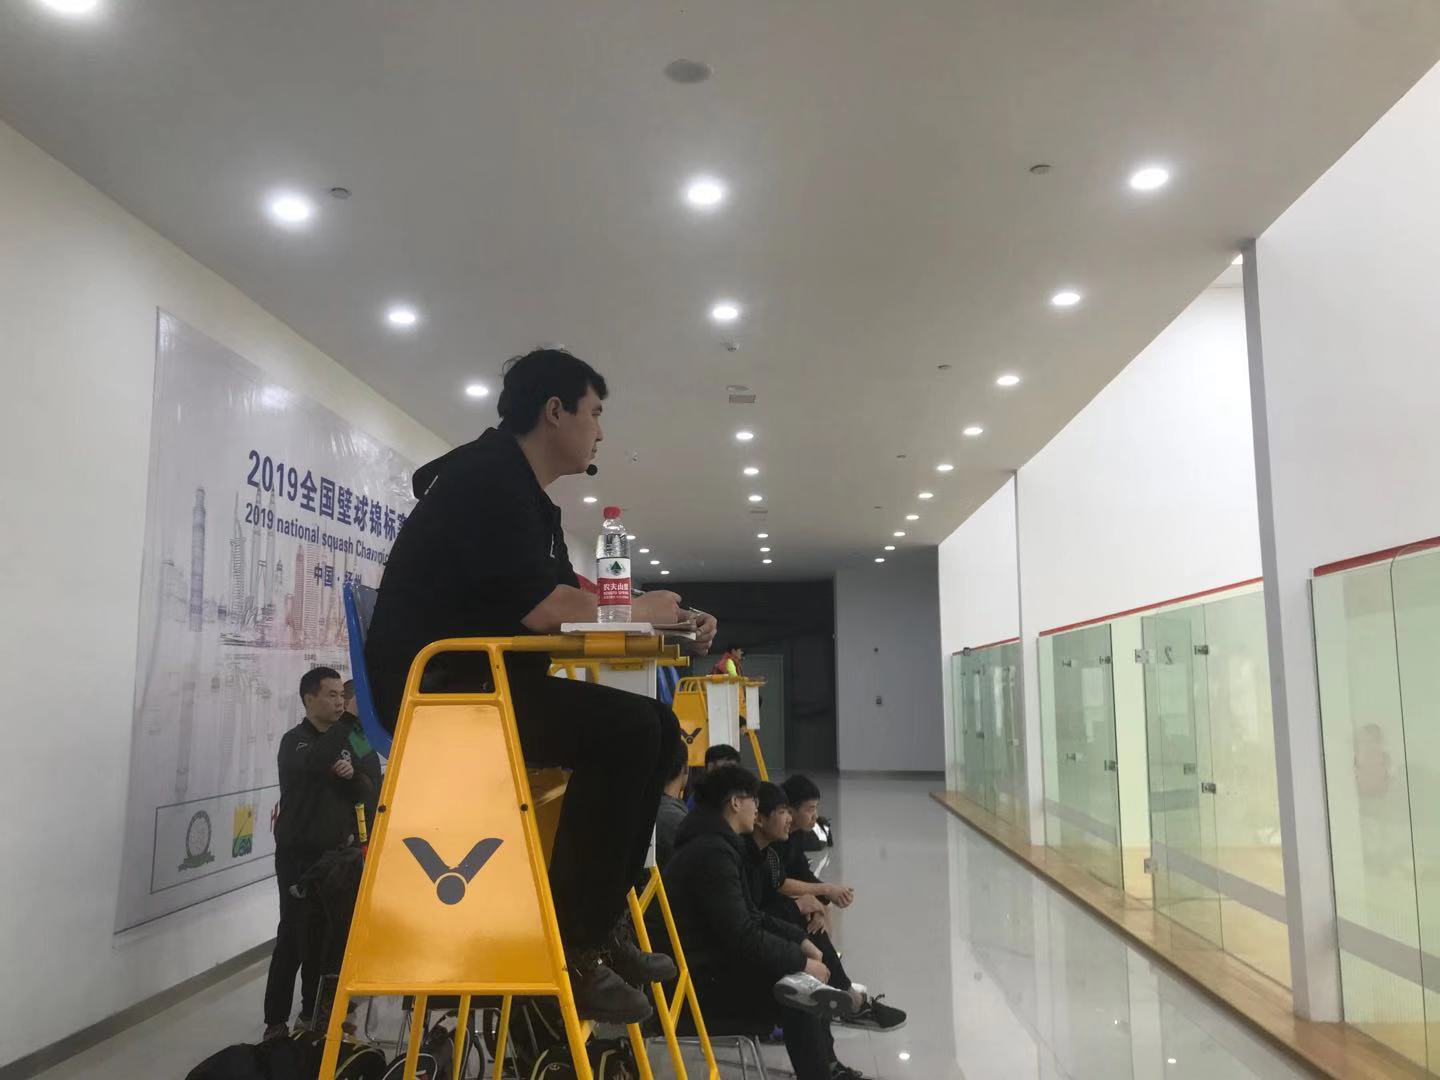 2019全国壁球锦标赛在扬州南部体育公园成功举办